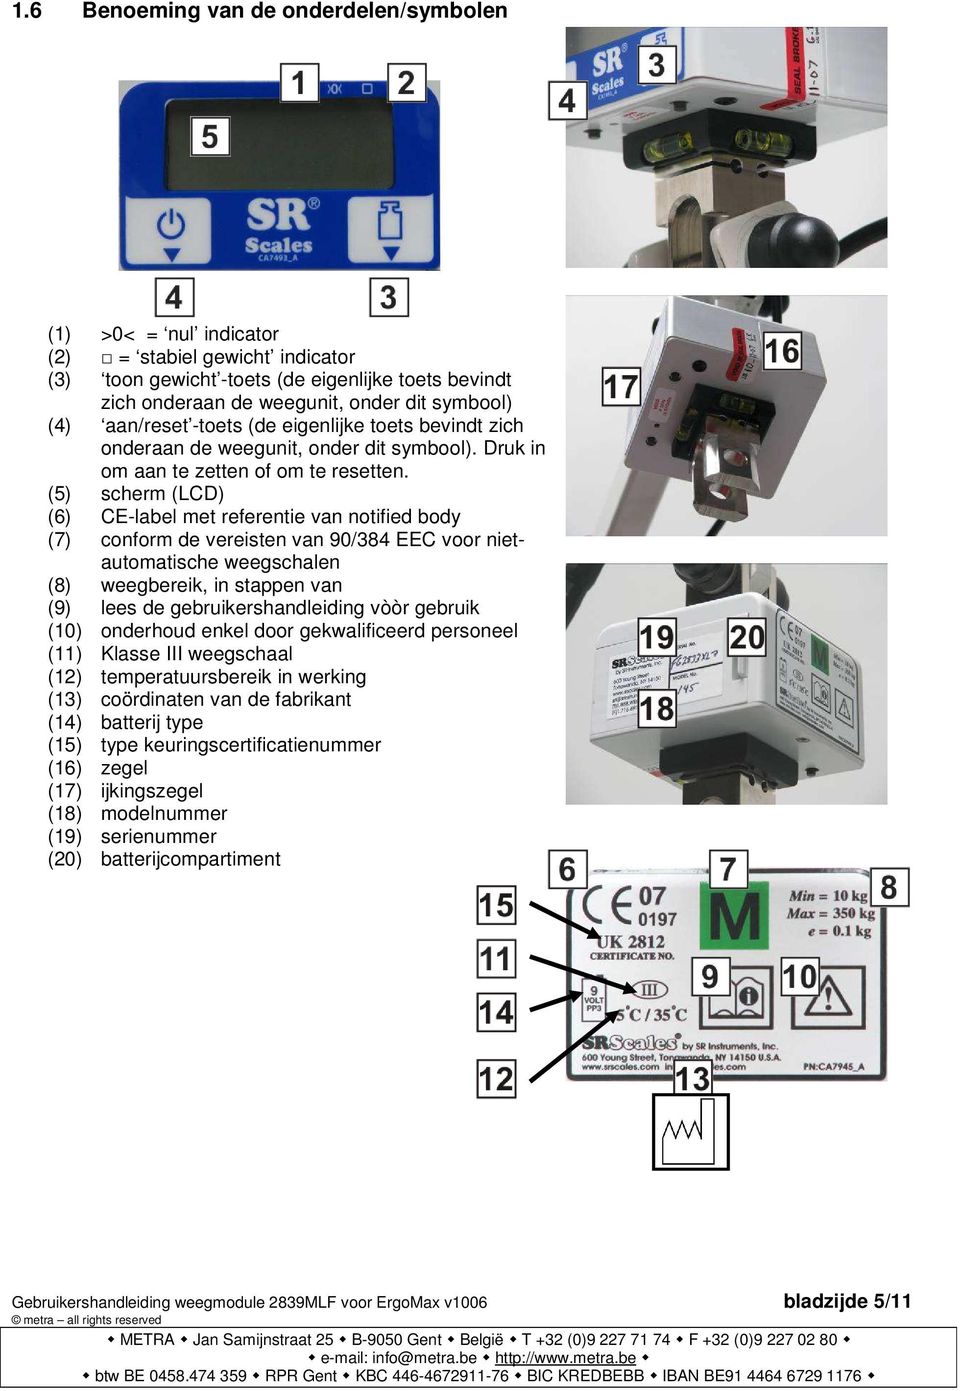 (5) scherm (LCD) (6) CE-label met referentie van notified body (7) conform de vereisten van 90/384 EEC voor nietautomatische weegschalen (8) weegbereik, in stappen van (9) lees de